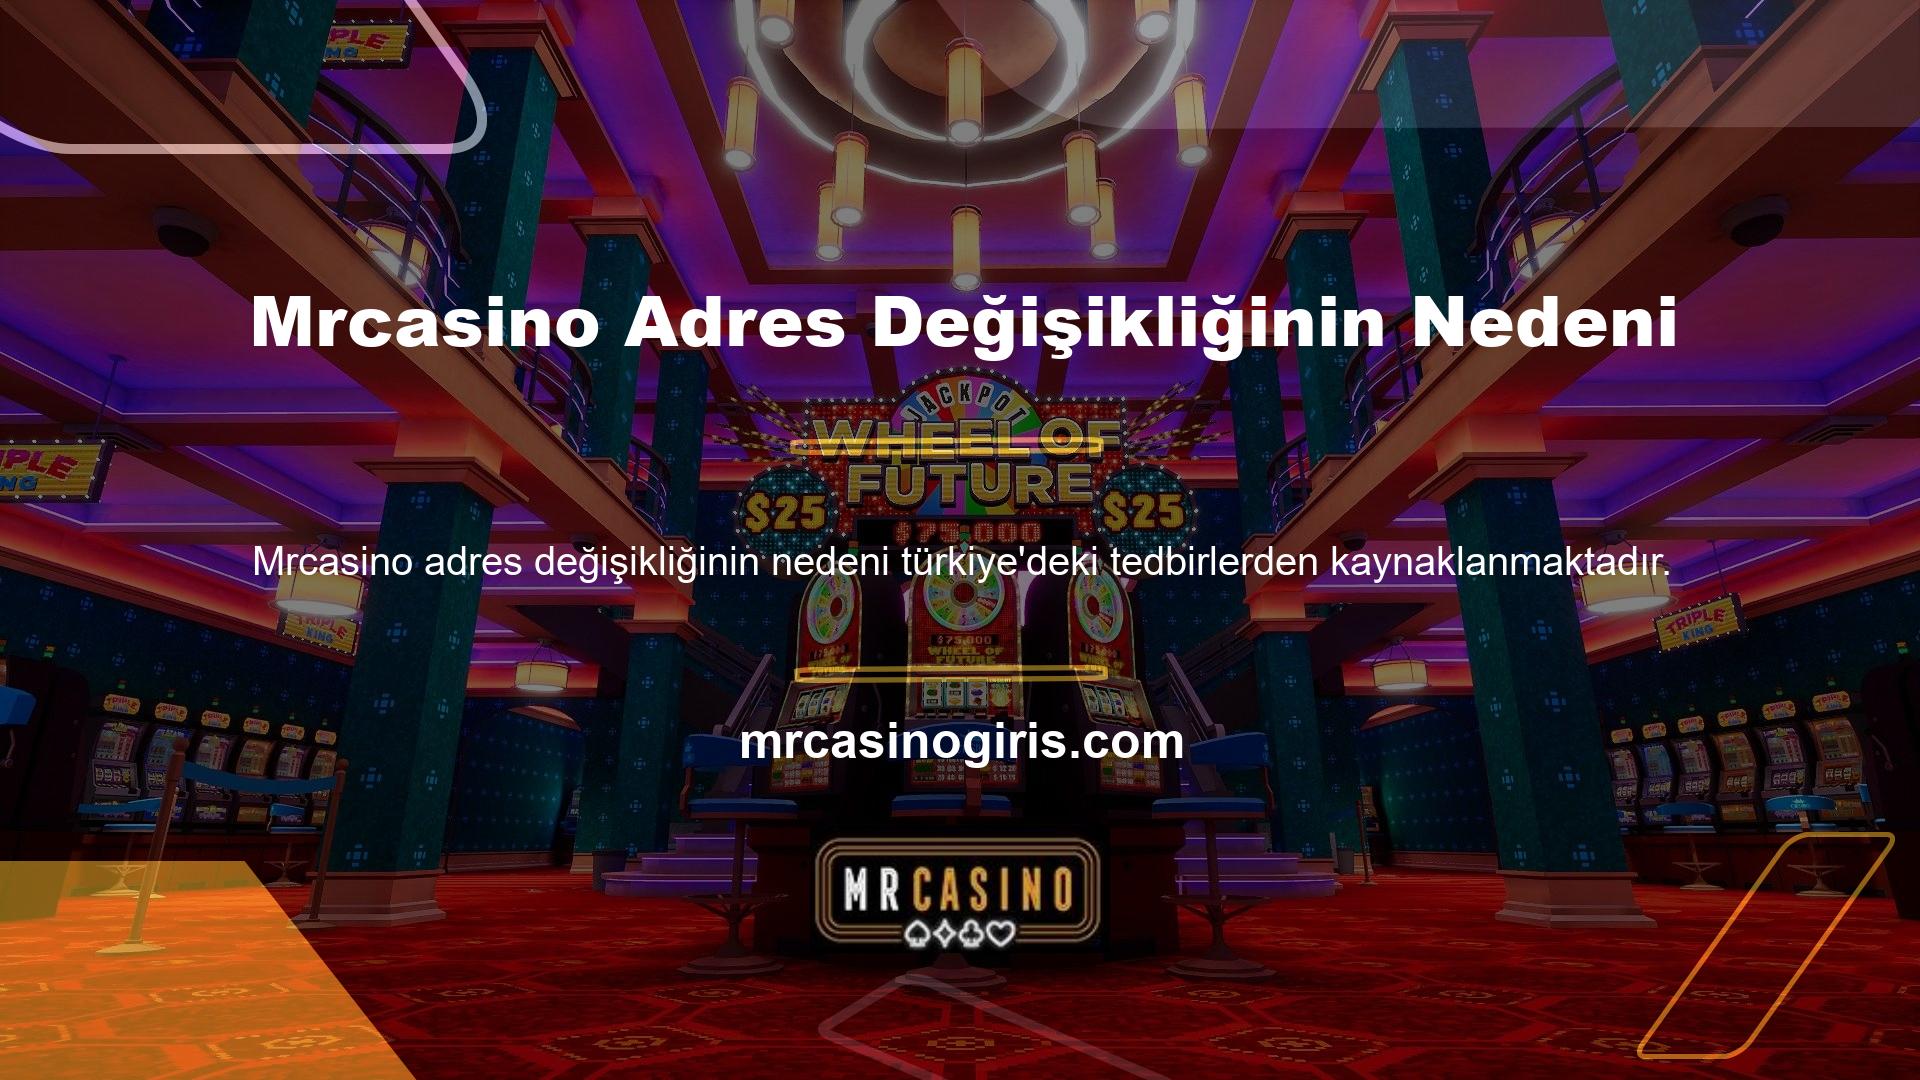 Türkiye'de tüm yabancı casino siteleri yasal olmadığı için bu önlemler istikrarlı bir şekilde devam edecektir